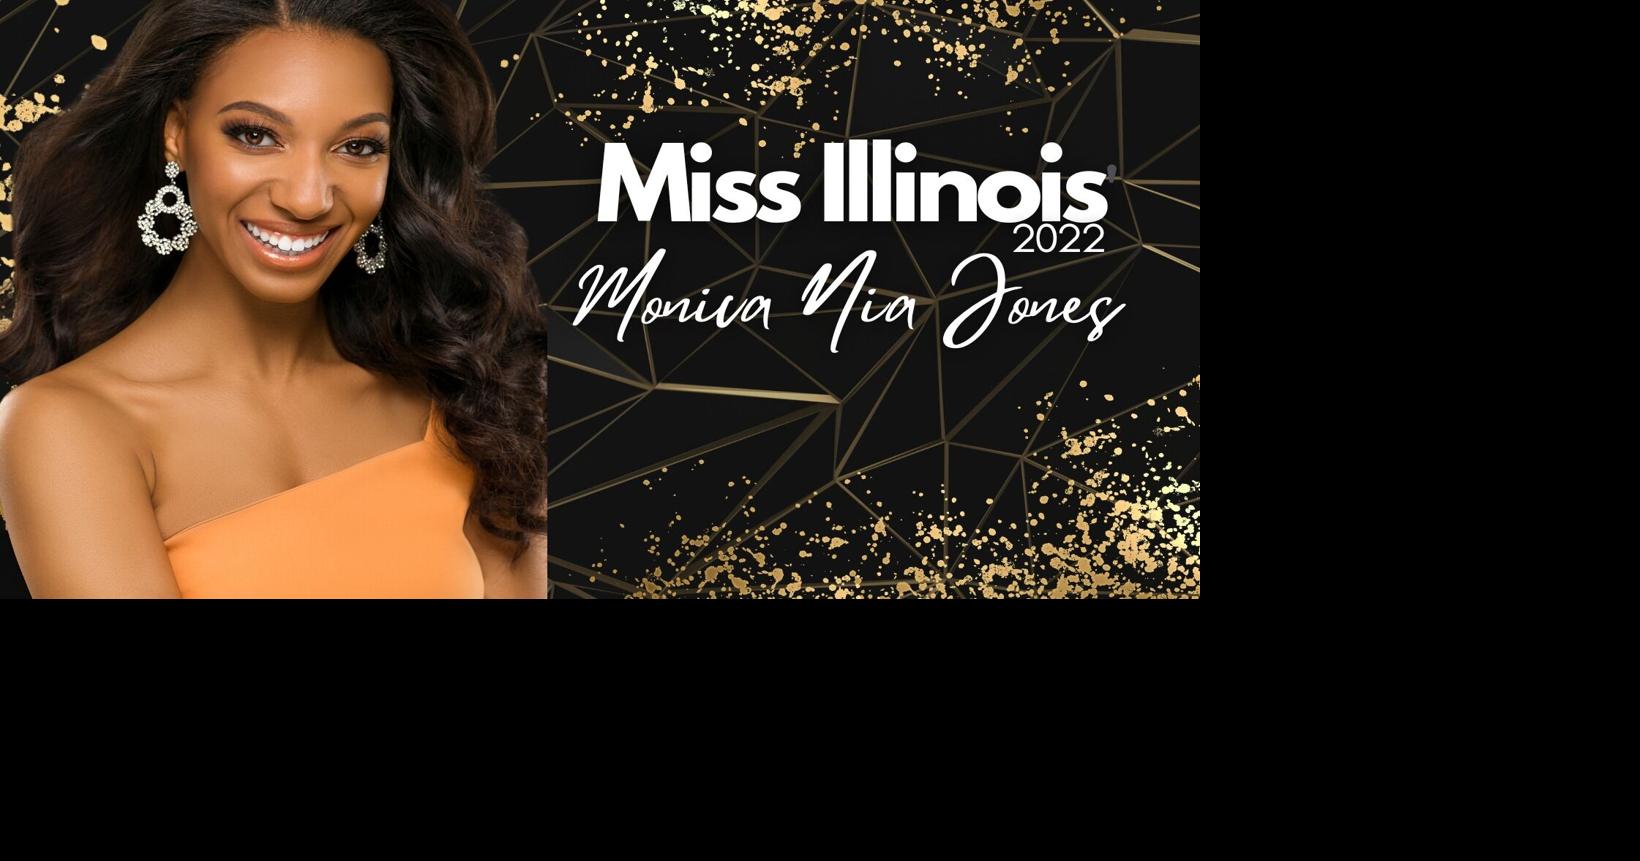 Monica Nia Jones crowned Miss Illinois 2022